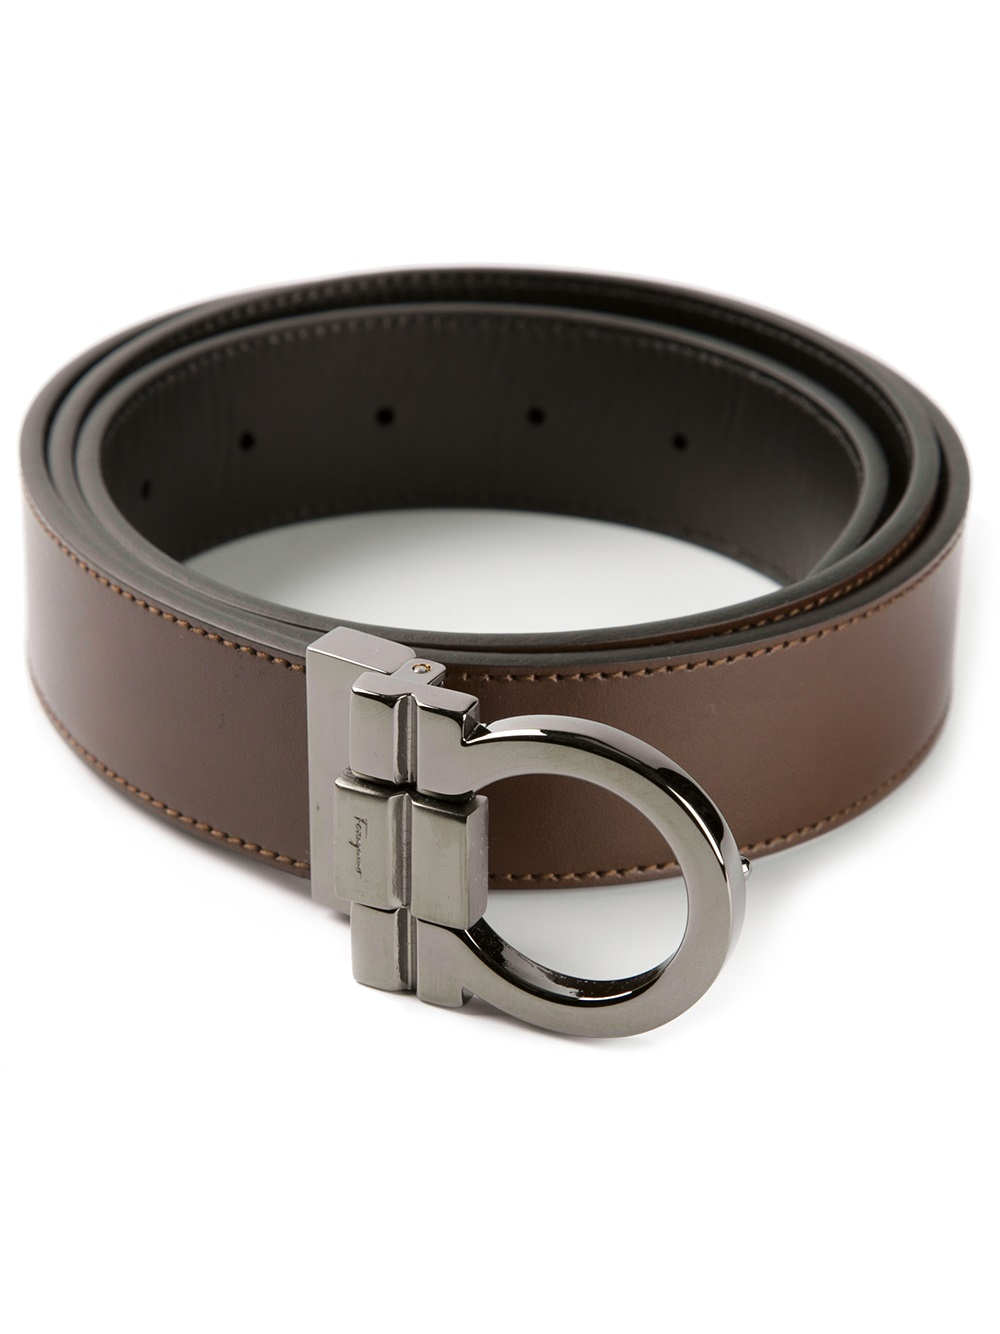 Lyst - Ferragamo Logo Buckle Belt in Brown for Men